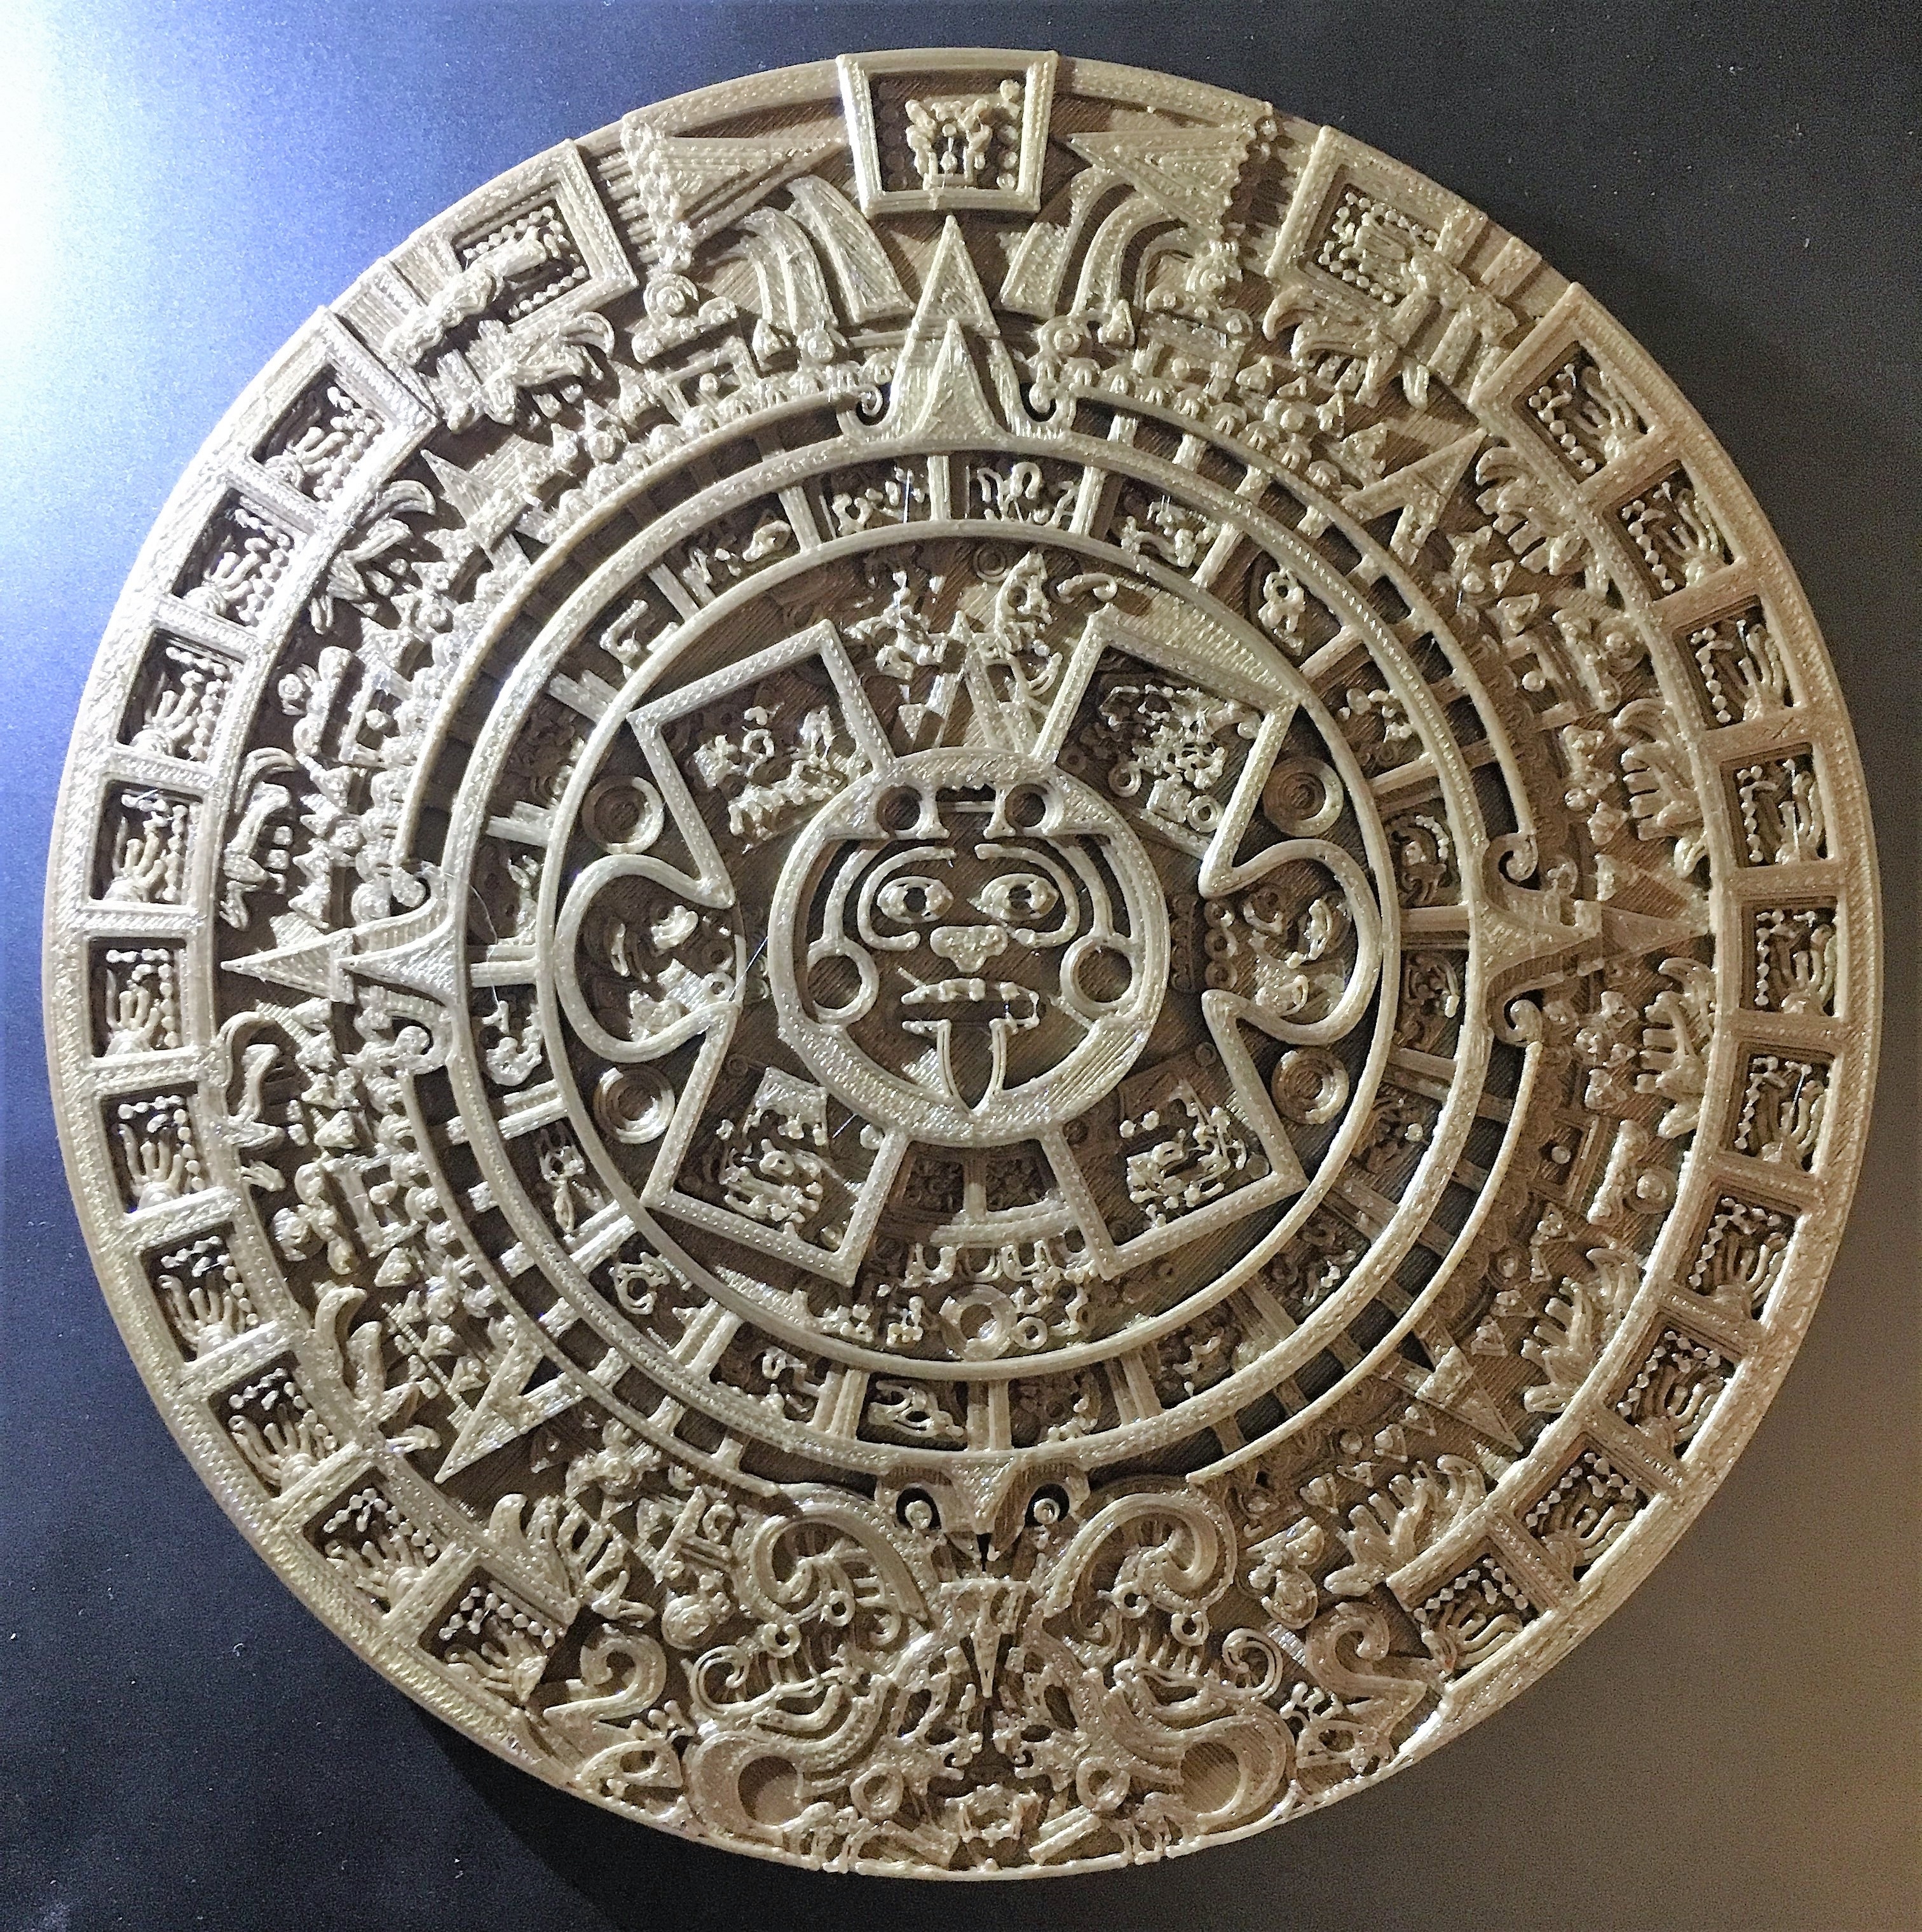 Aztec Calendar - Sun Stone